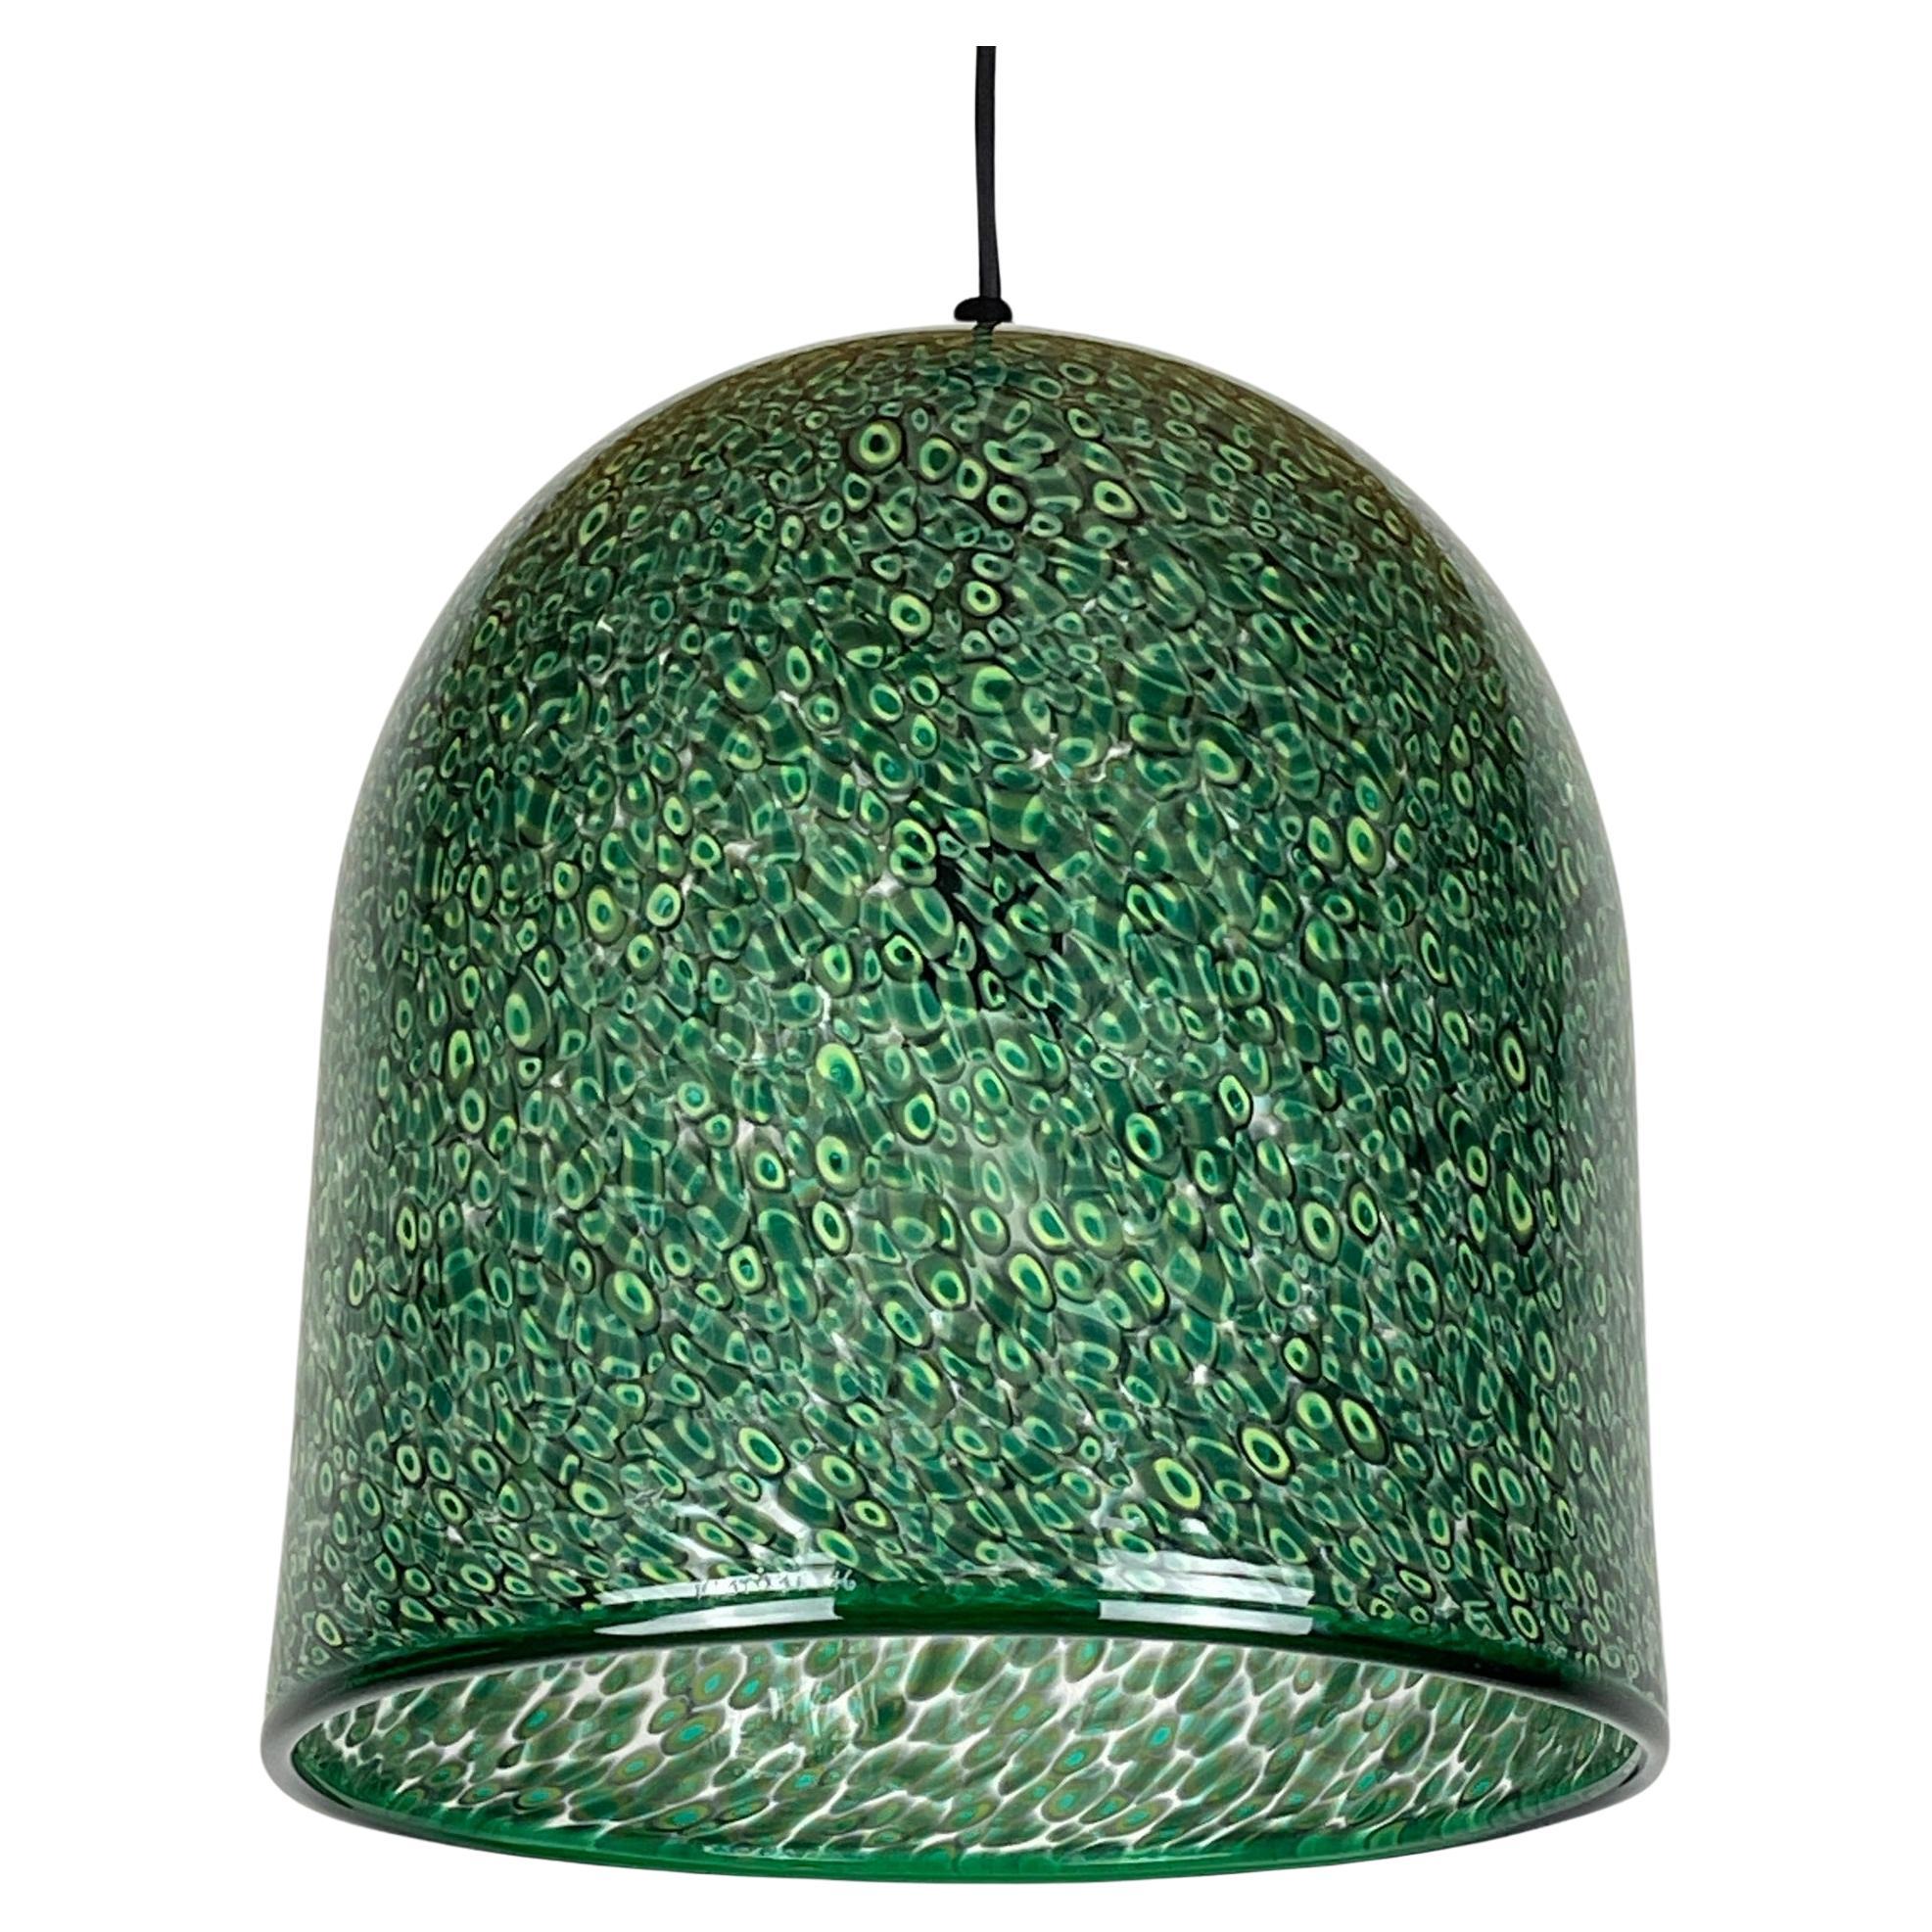  Green murano pendant lamp Neverrino by Gae Aulenti for Vistosi Italy 1976s